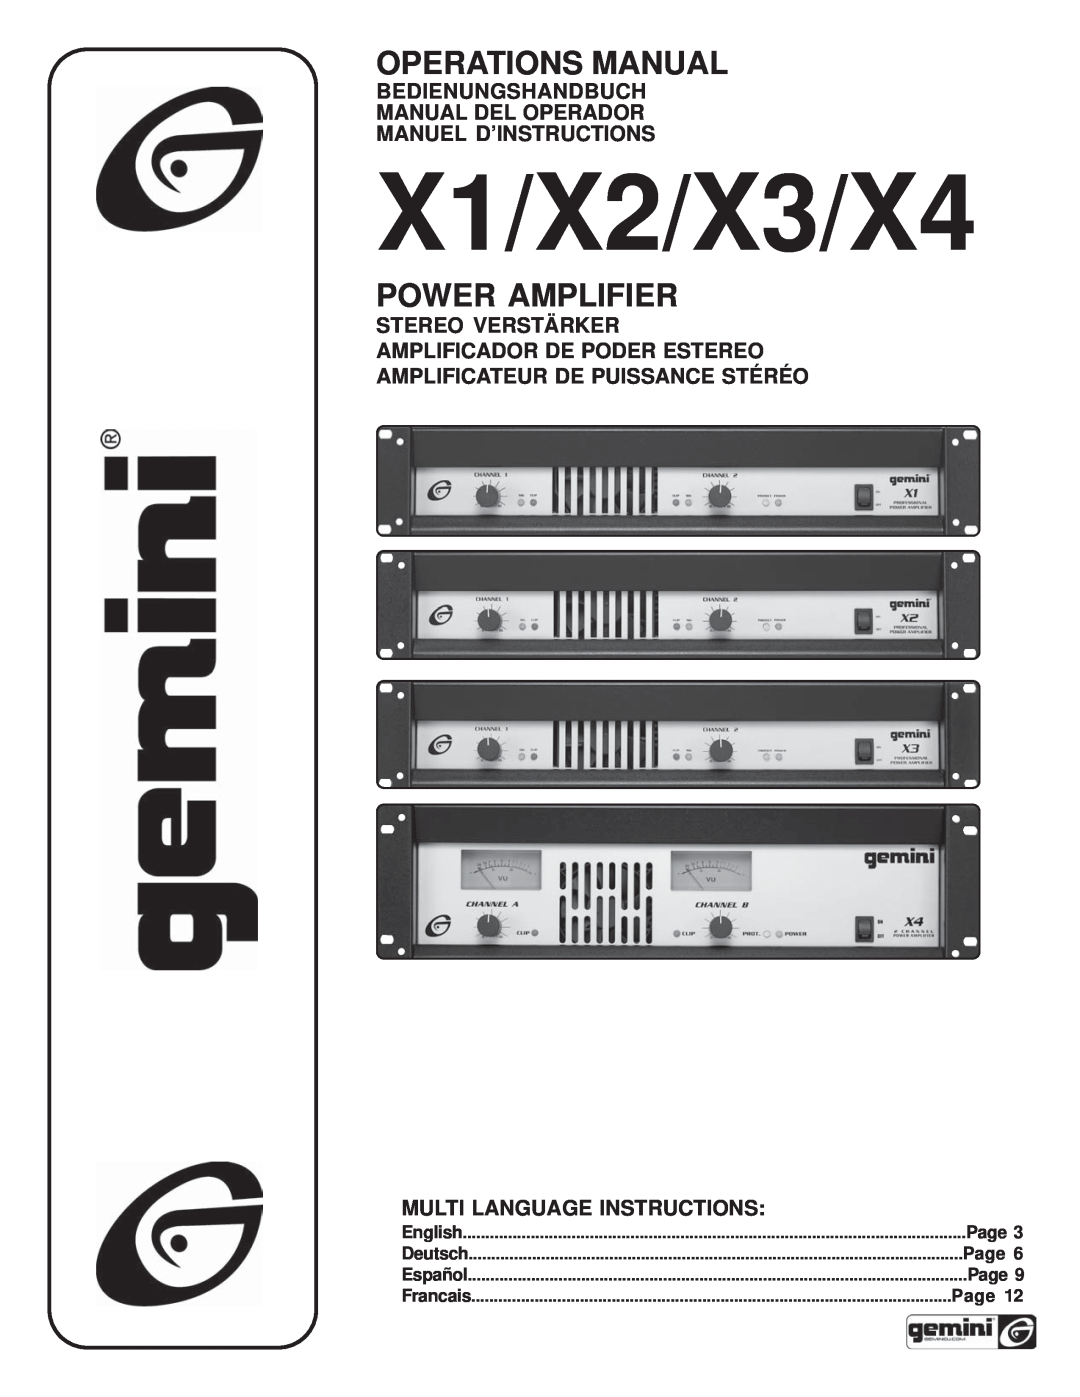 Gemini X4 manual Bedienungshandbuch Manual Del Operador, Manuel D’Instructions, Amplificateur De Puissance Stéréo, Page 